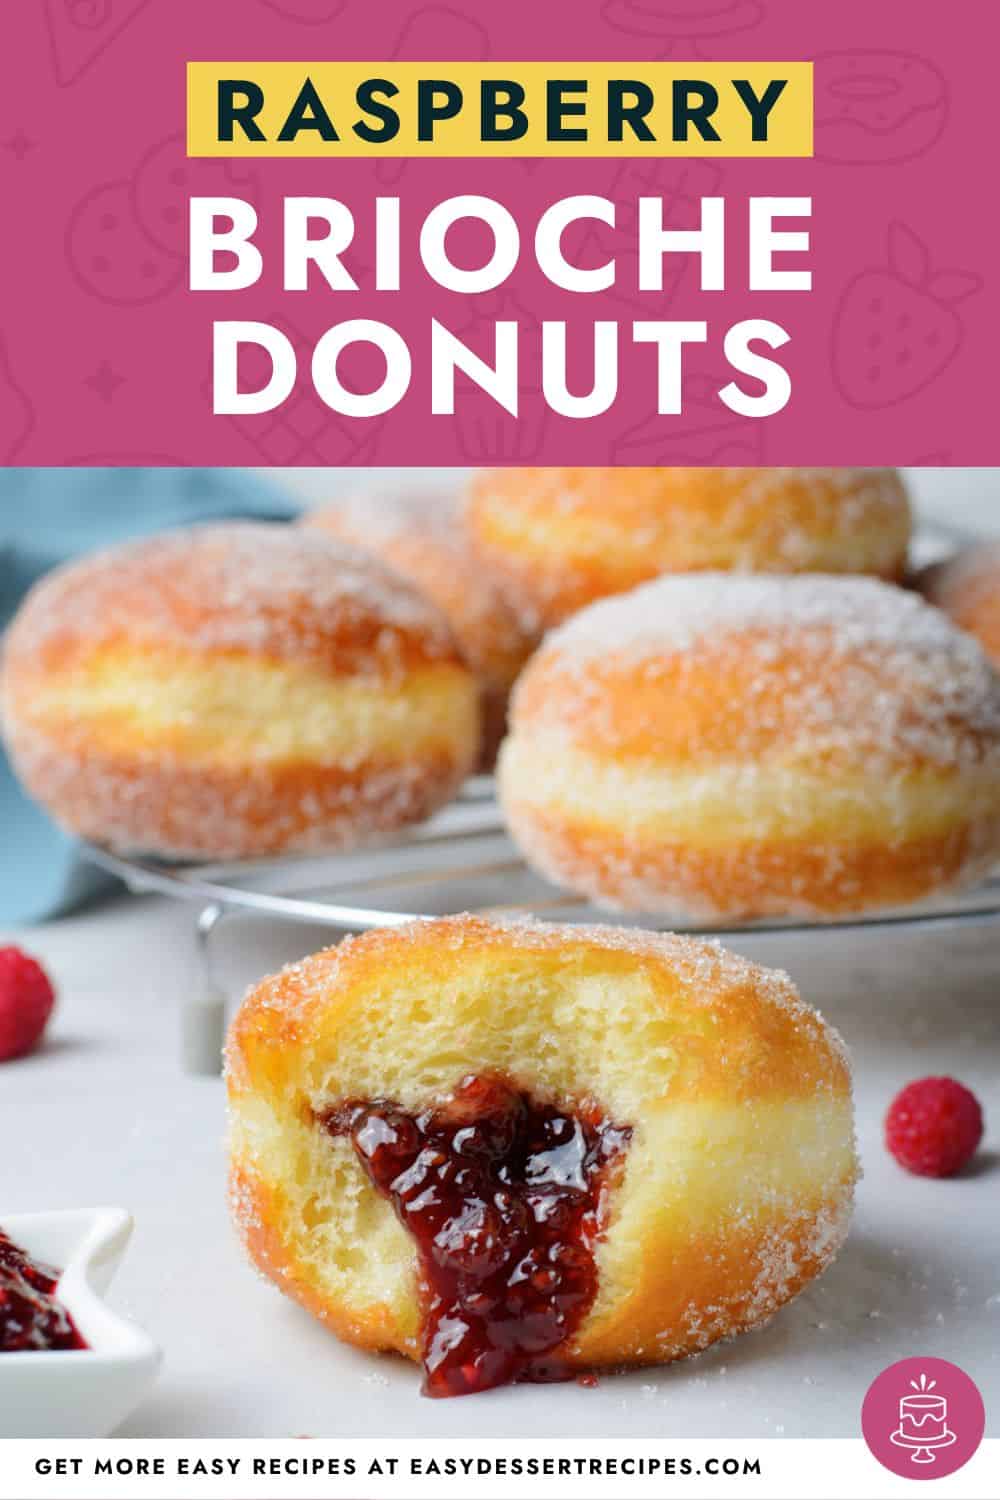 Raspberry brioche donuts with raspberry jam.